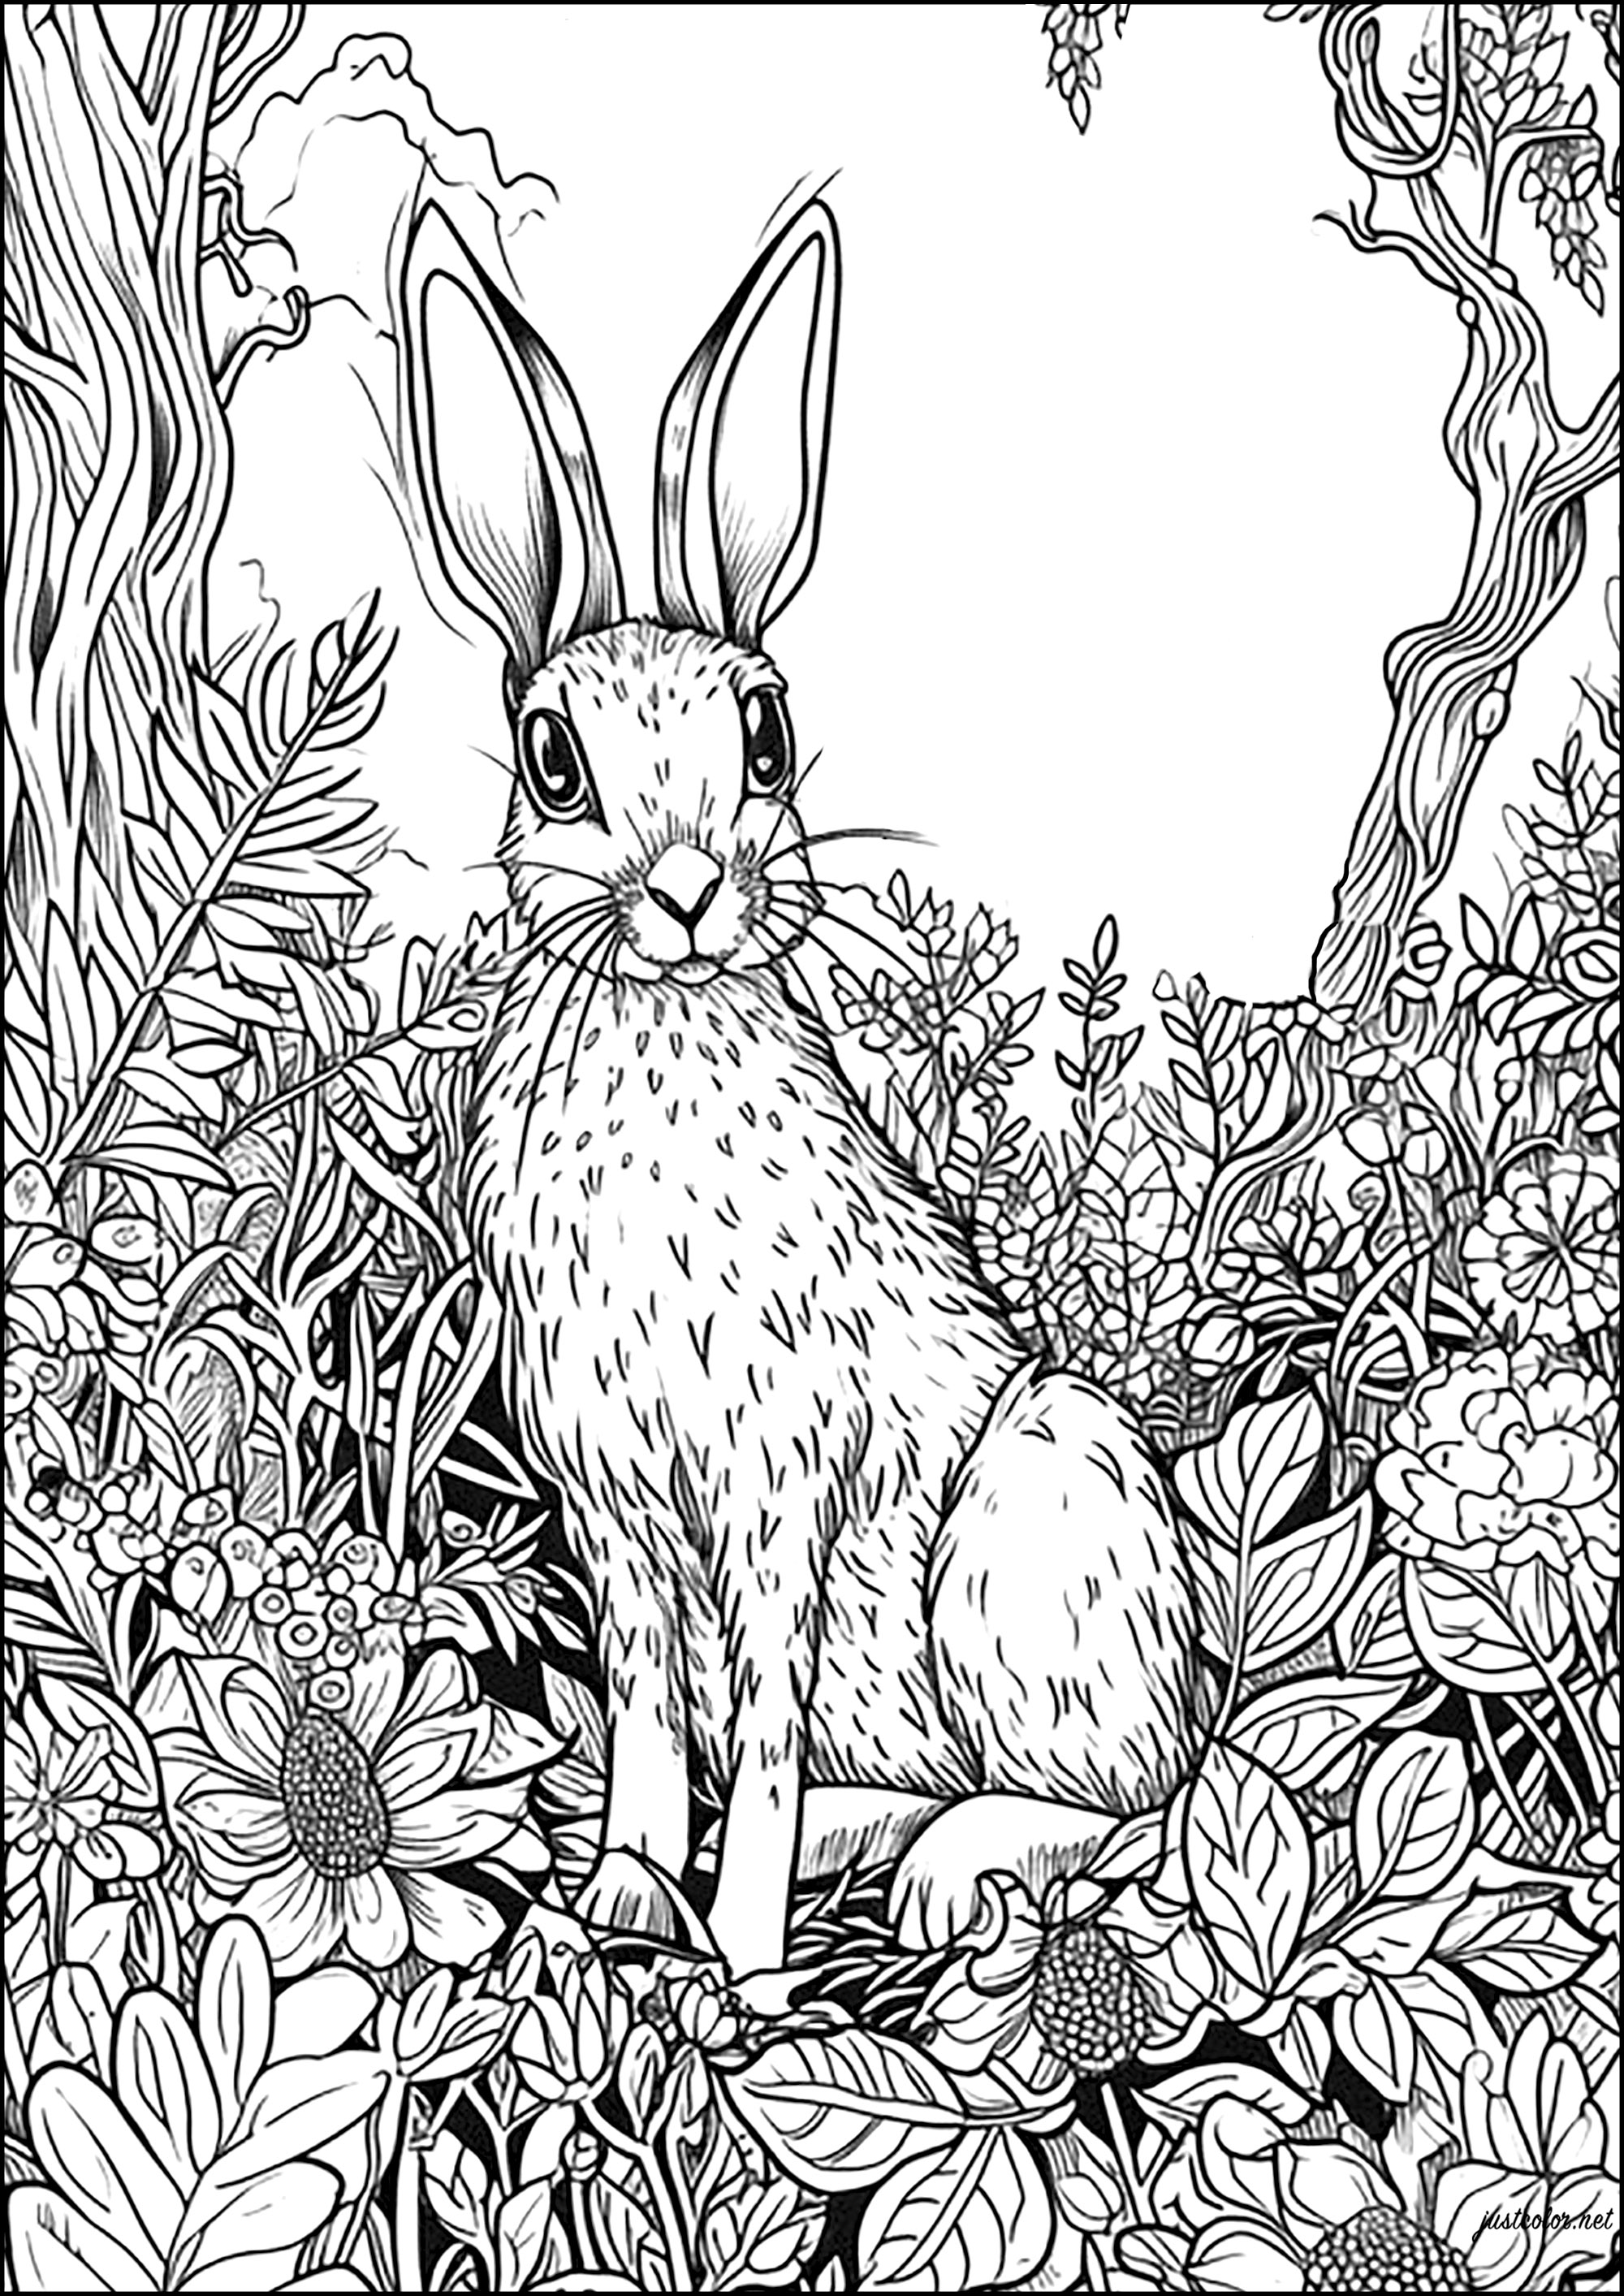 Large rabbit vigilant amid flowers and leaves